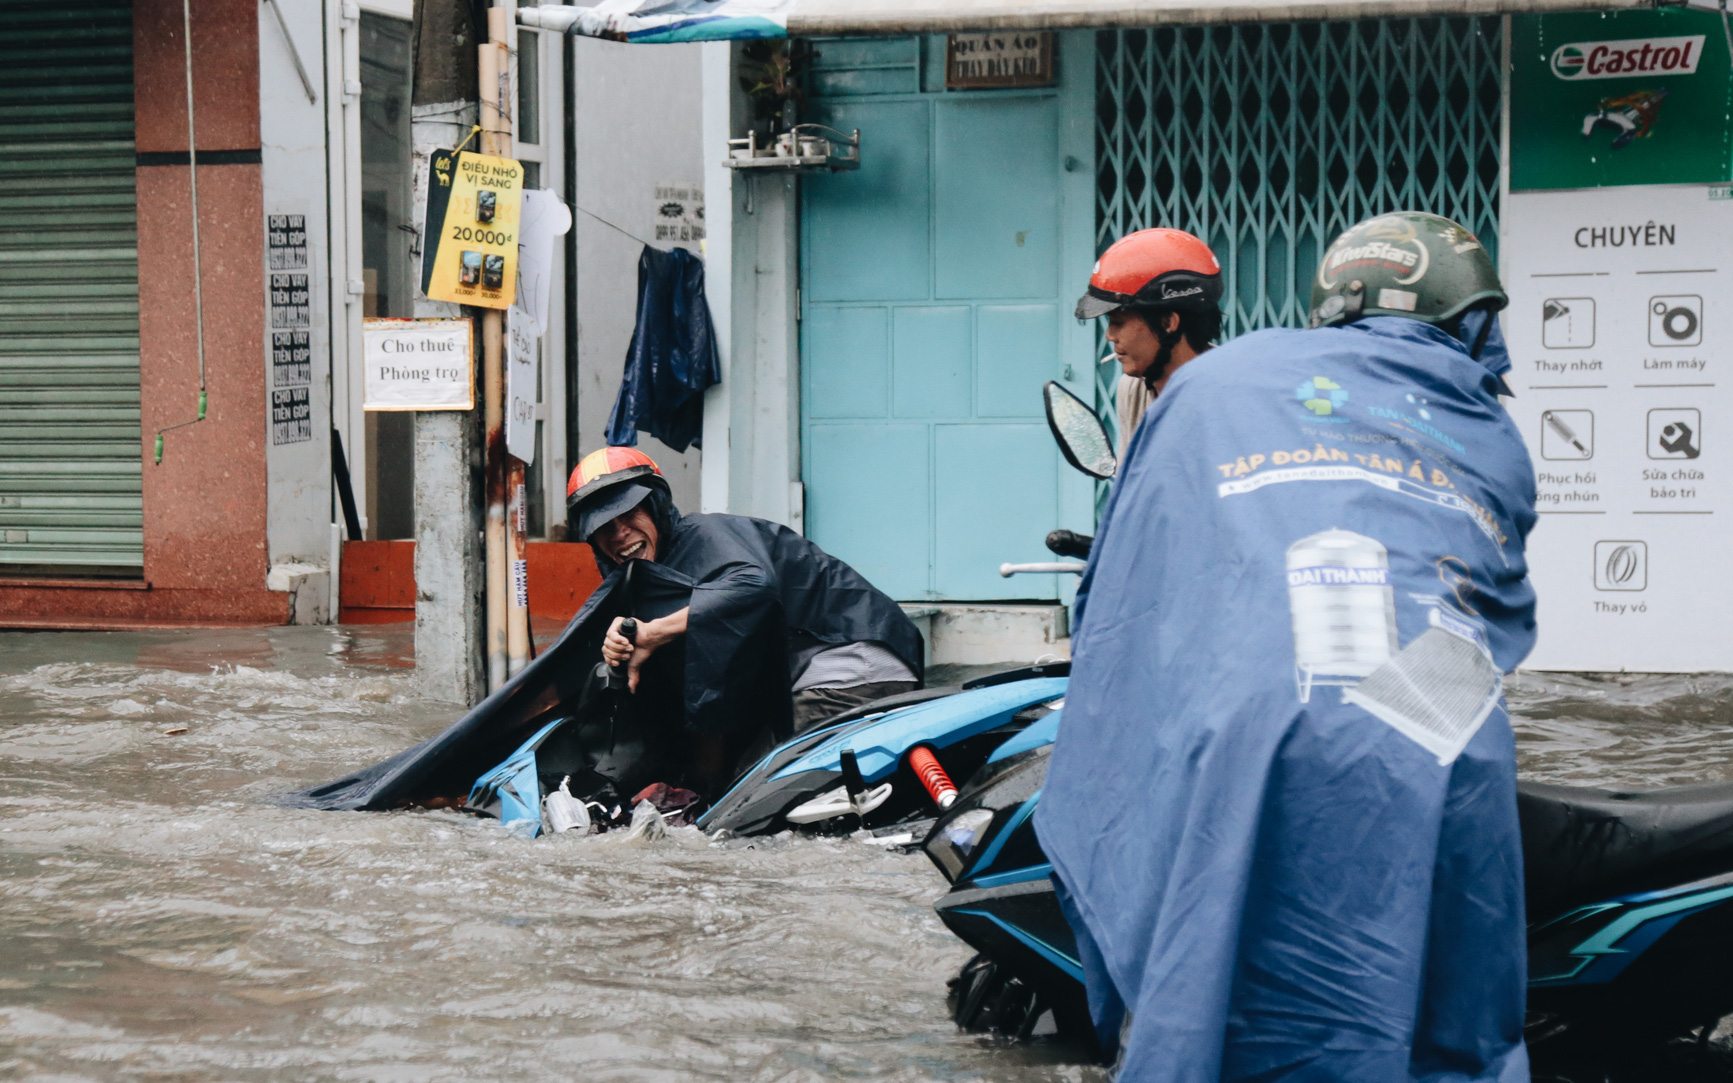 Ảnh: Đường Sài Gòn ngập lút bánh xe khi mưa lớn, người dân té ngã sõng soài